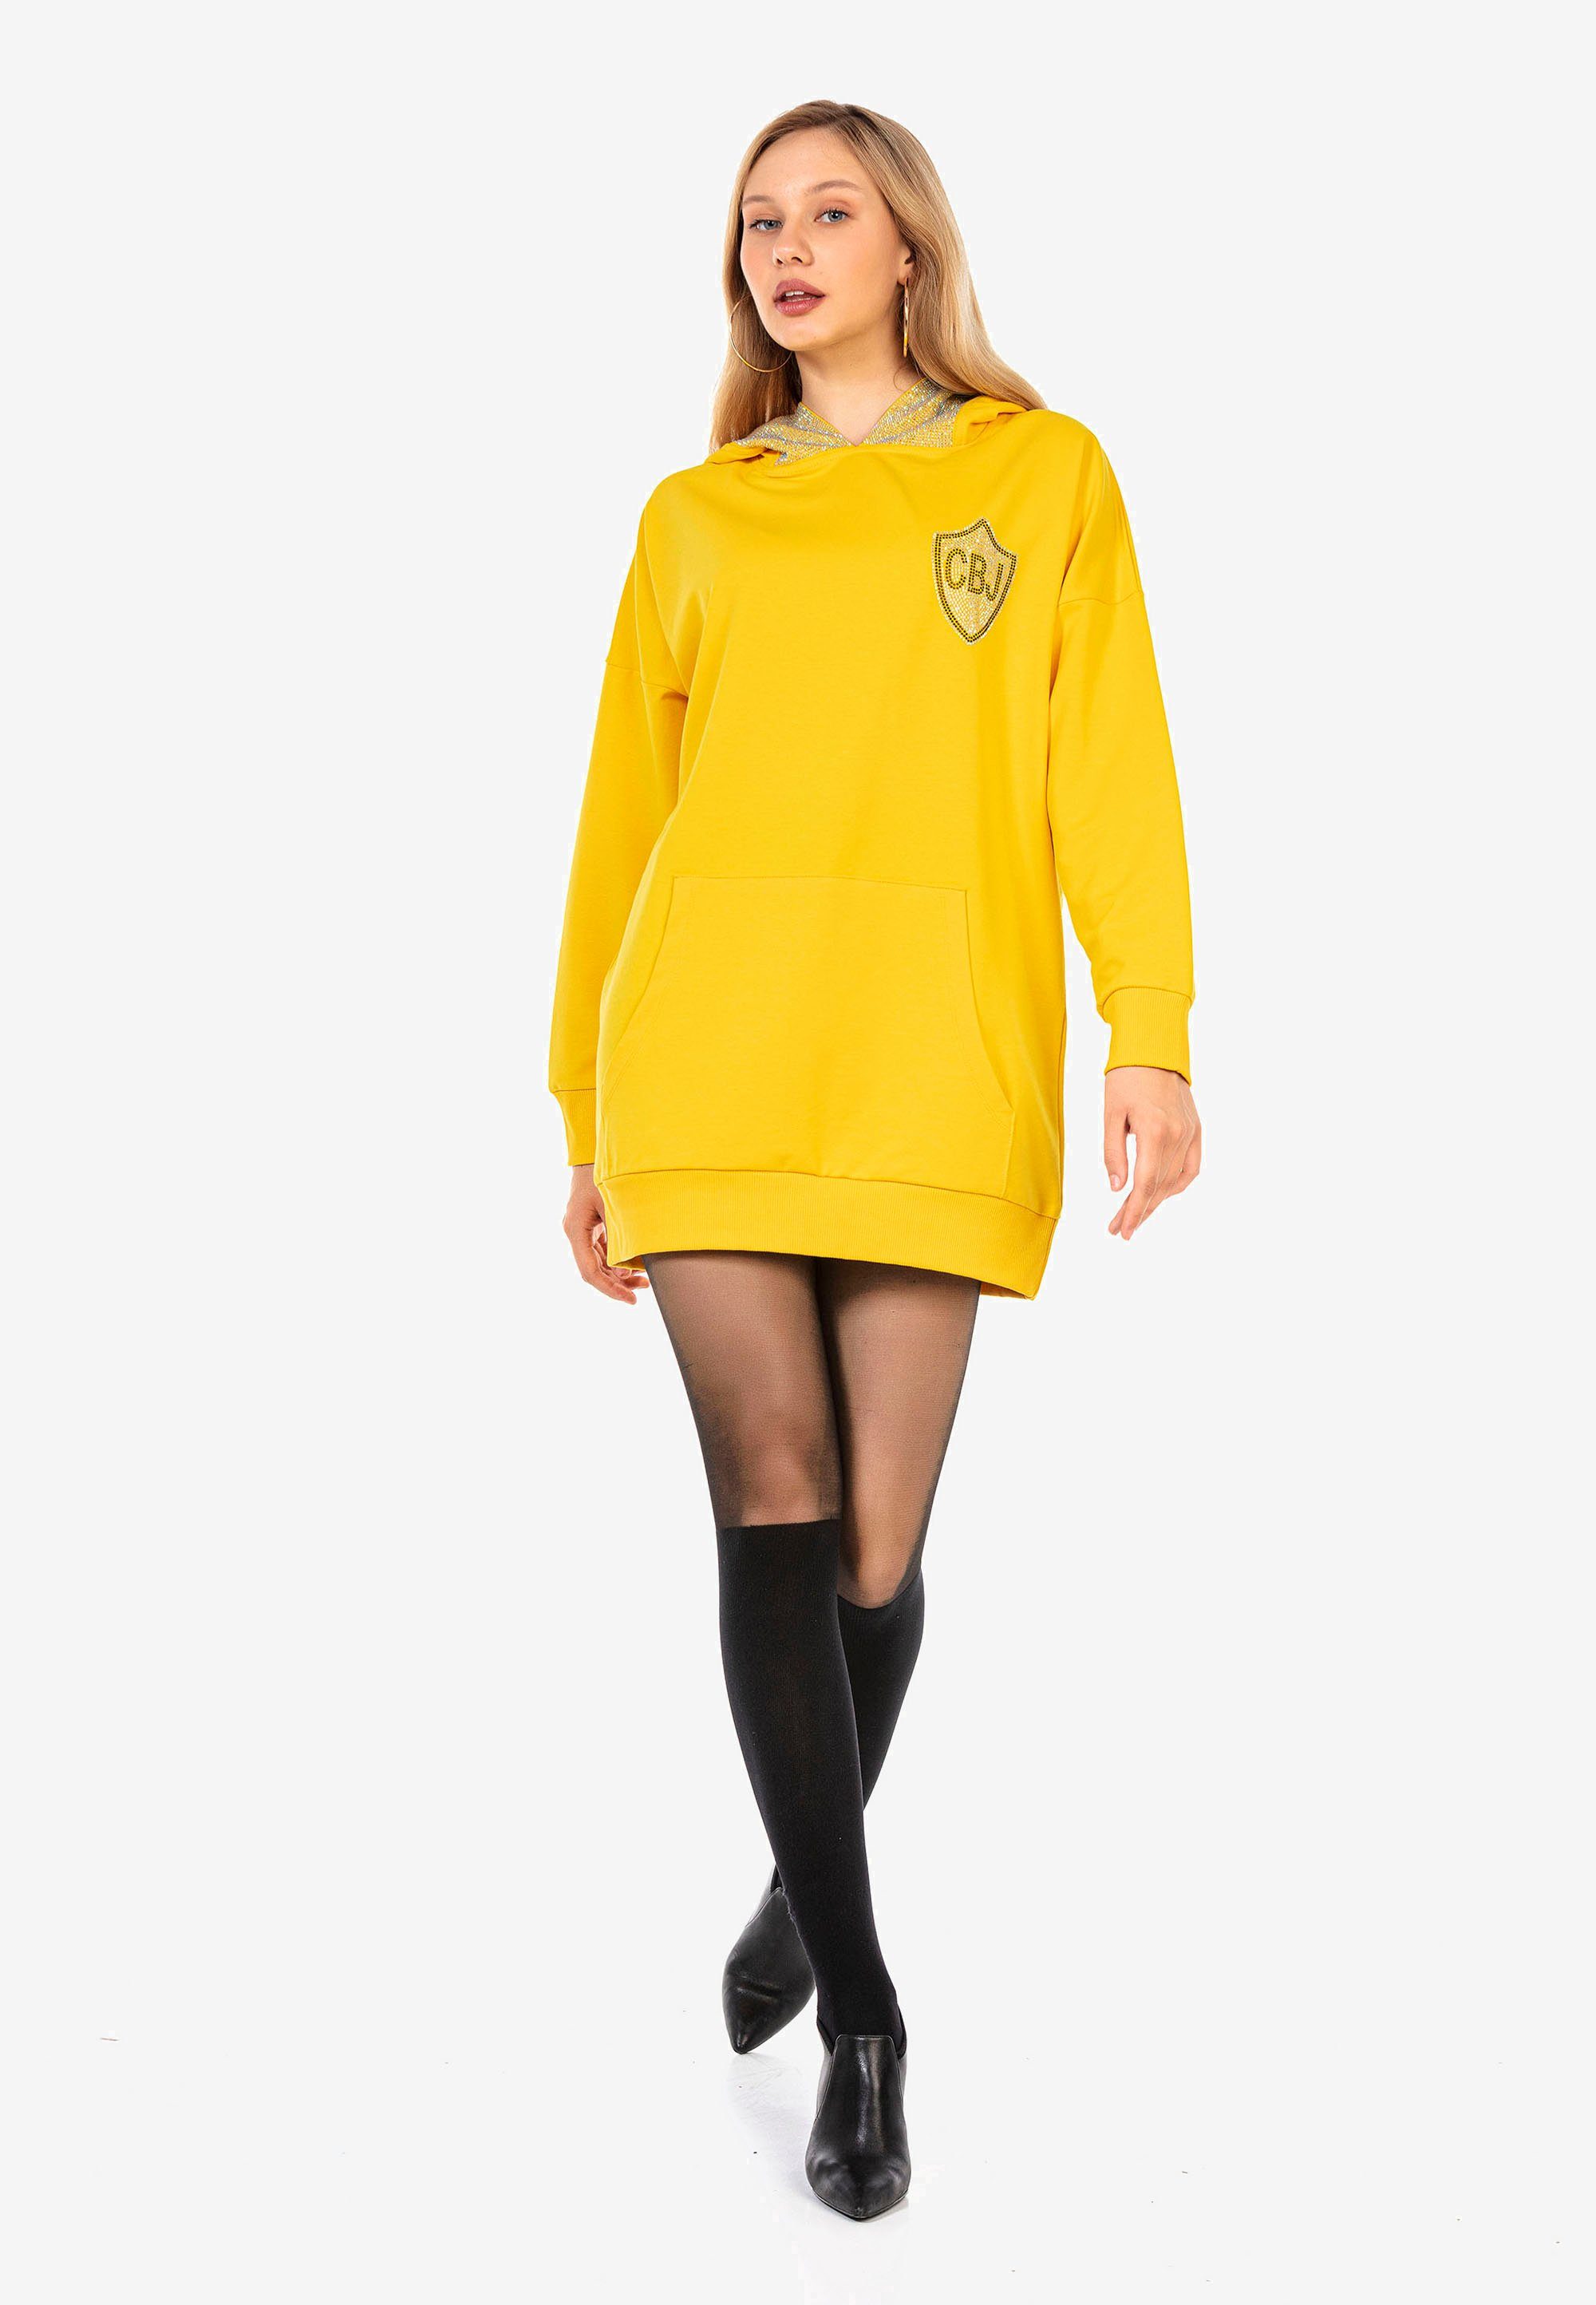 Jerseykleid gelb Cipo & Strass-Design mit Baxx aufwendigem